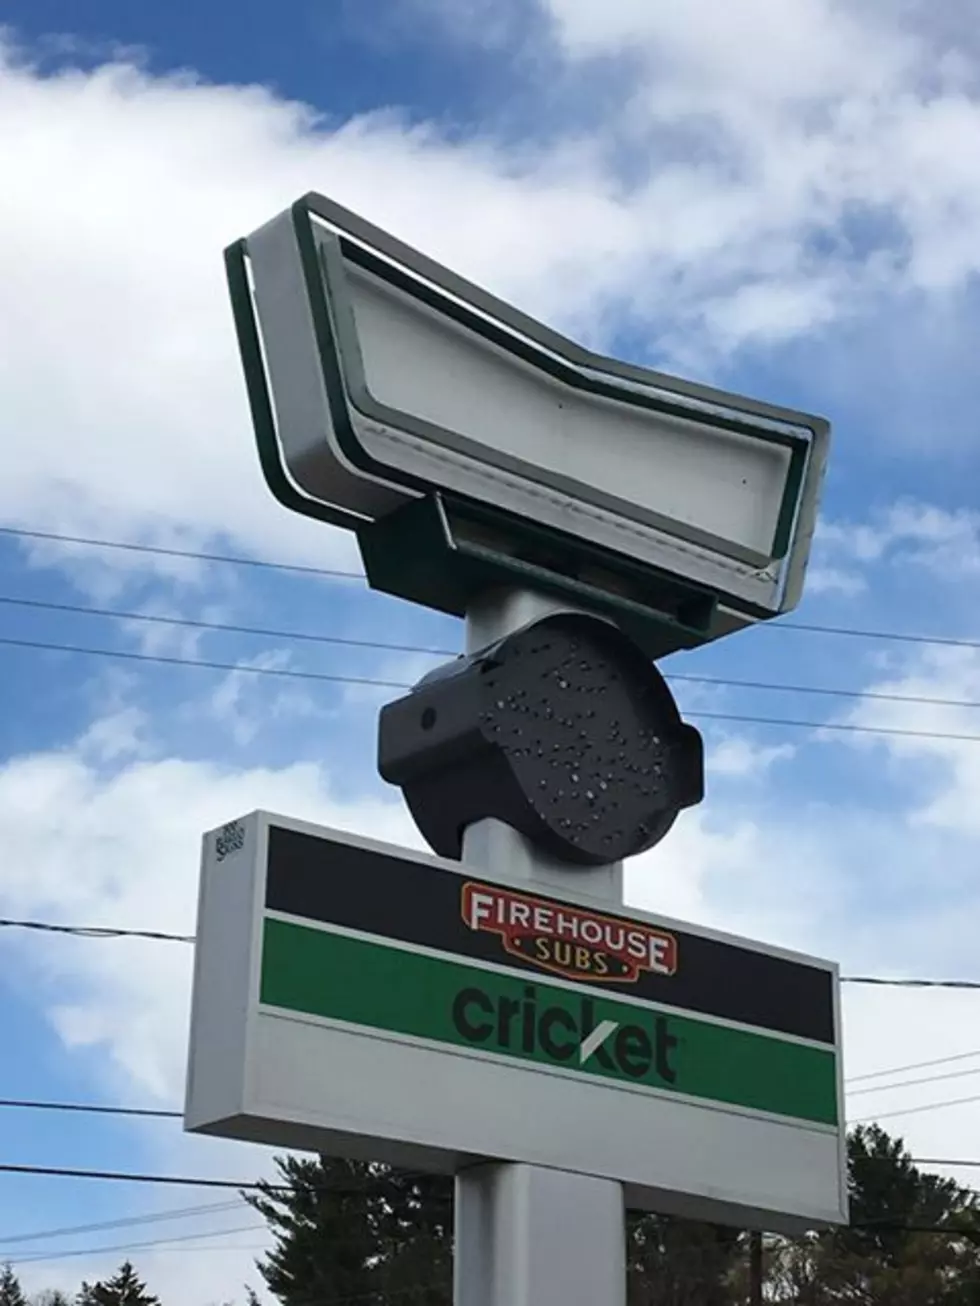 RUMOR: Something New Going Into Former Krispy Kreme in Auburn